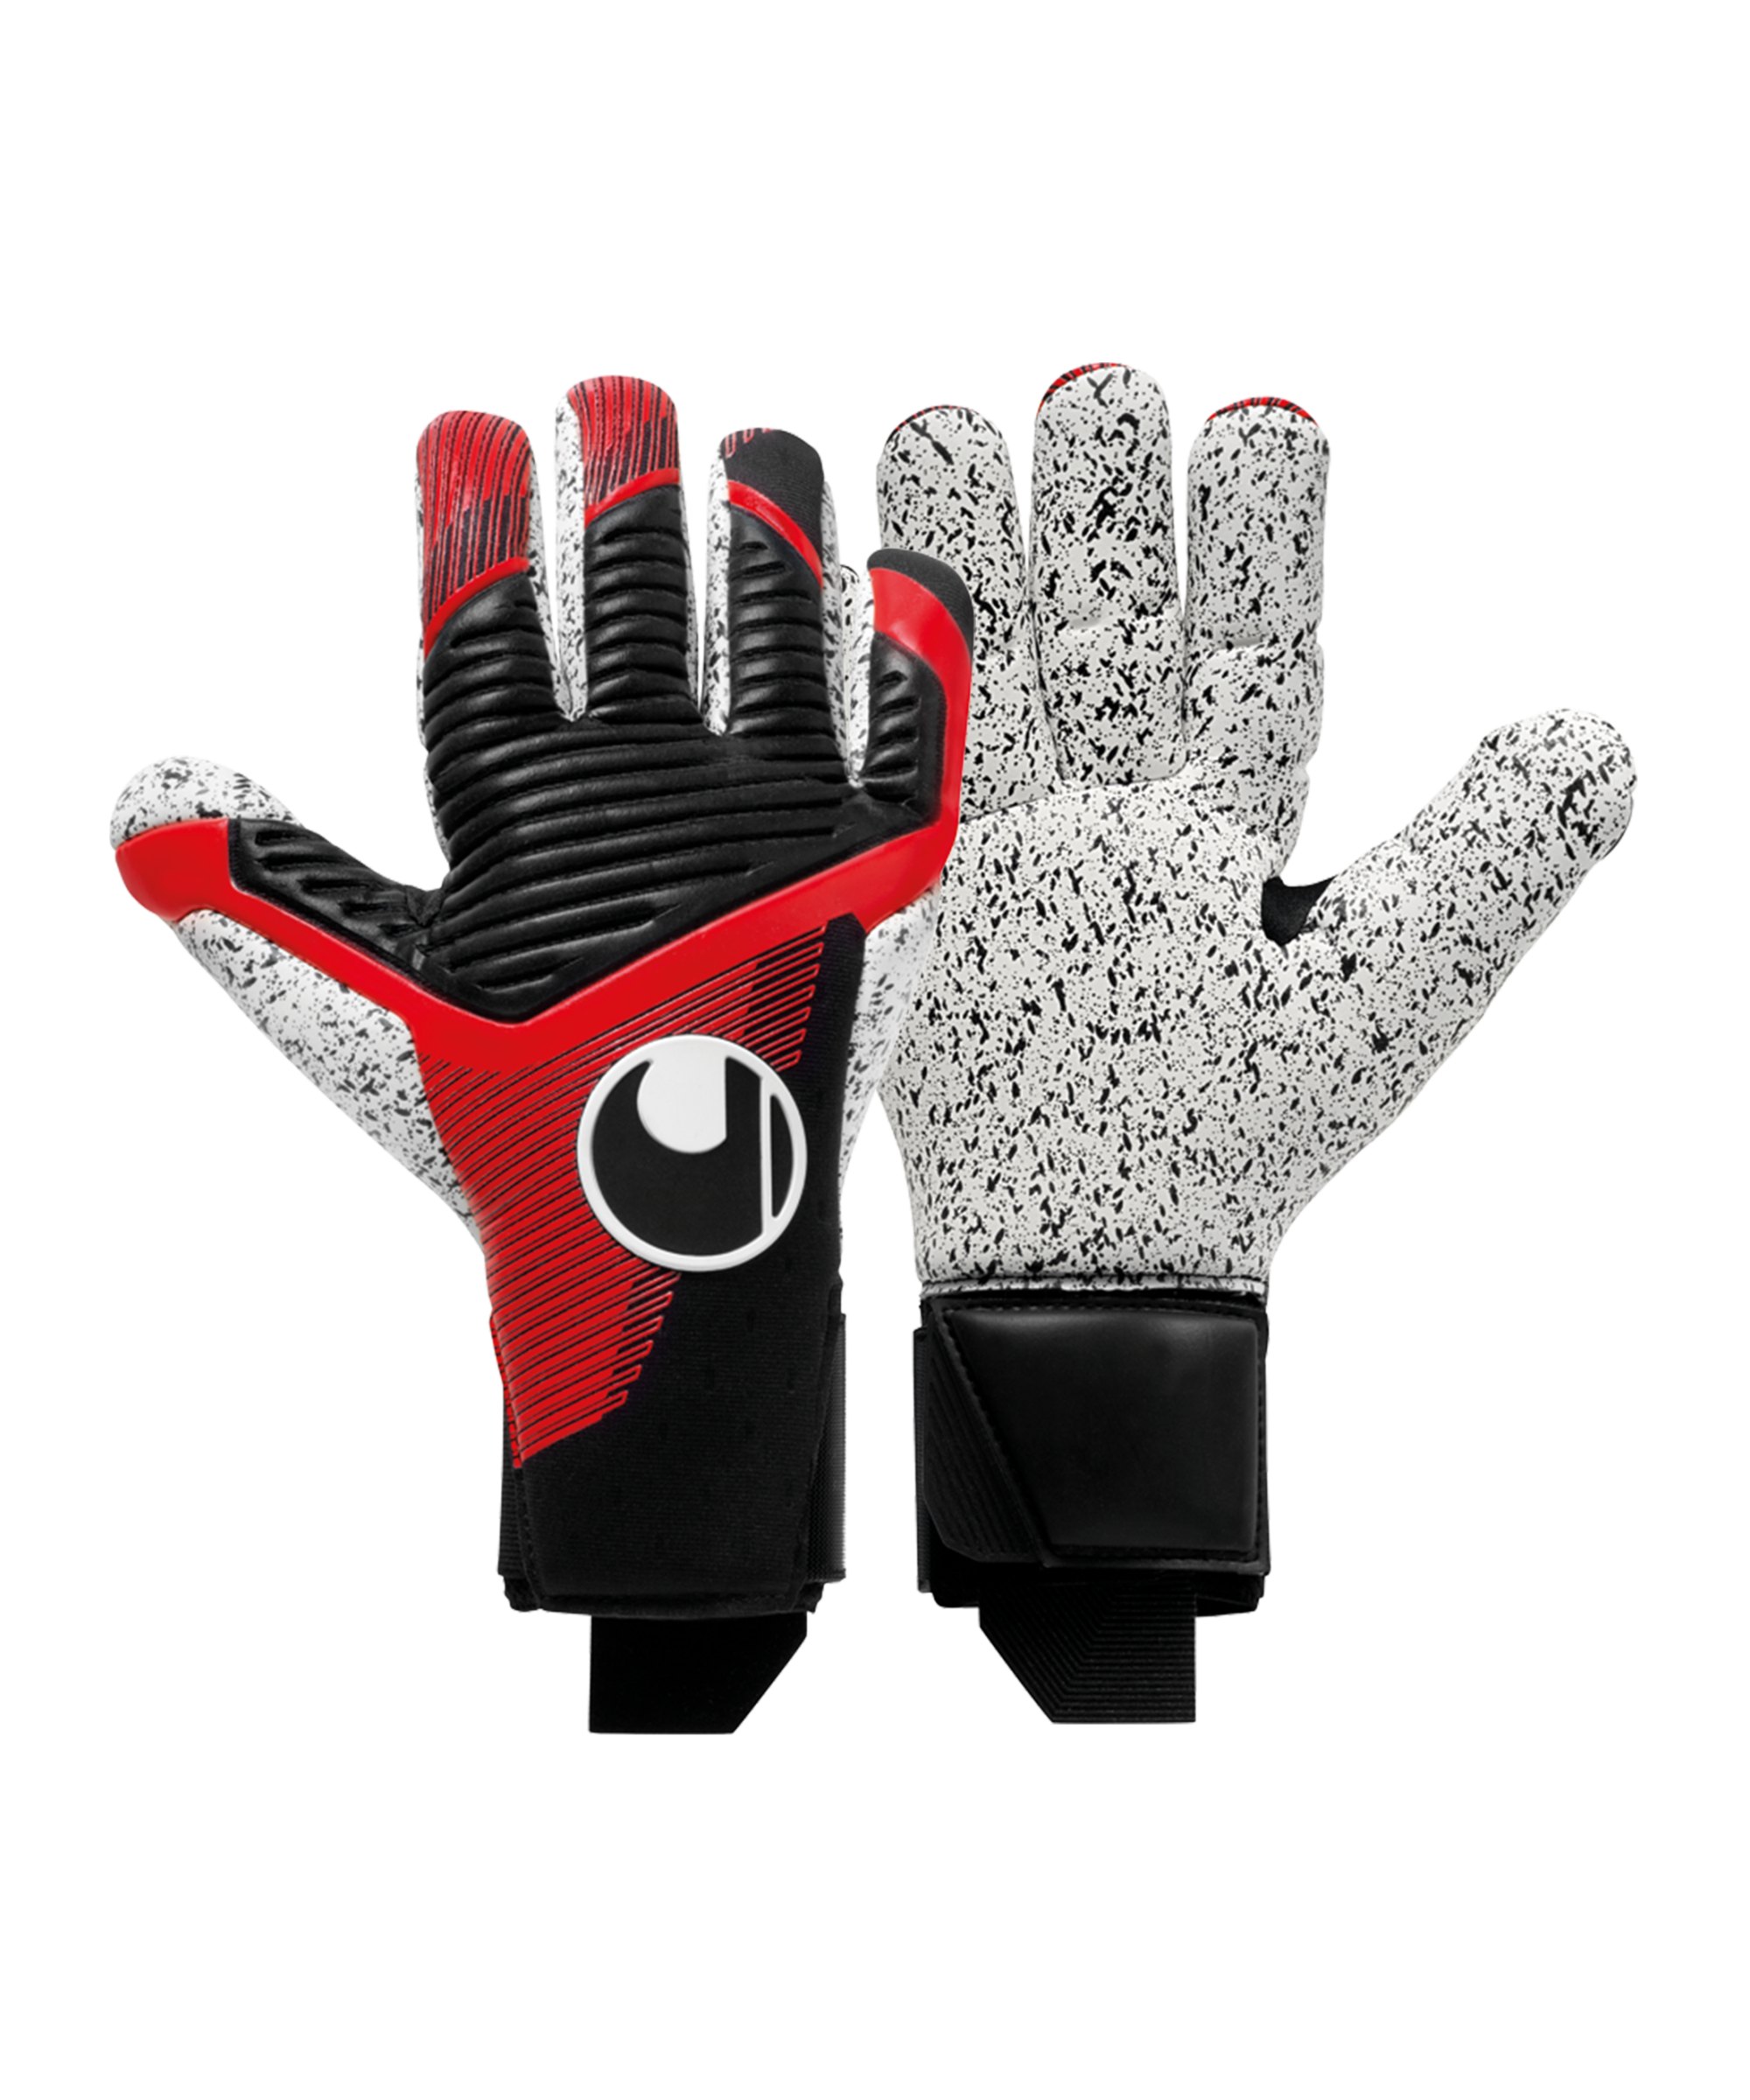 Uhlsport Powerline Supergrip+ Finger Surround TW-Handschuhe Schwarz Rot F01 - schwarz